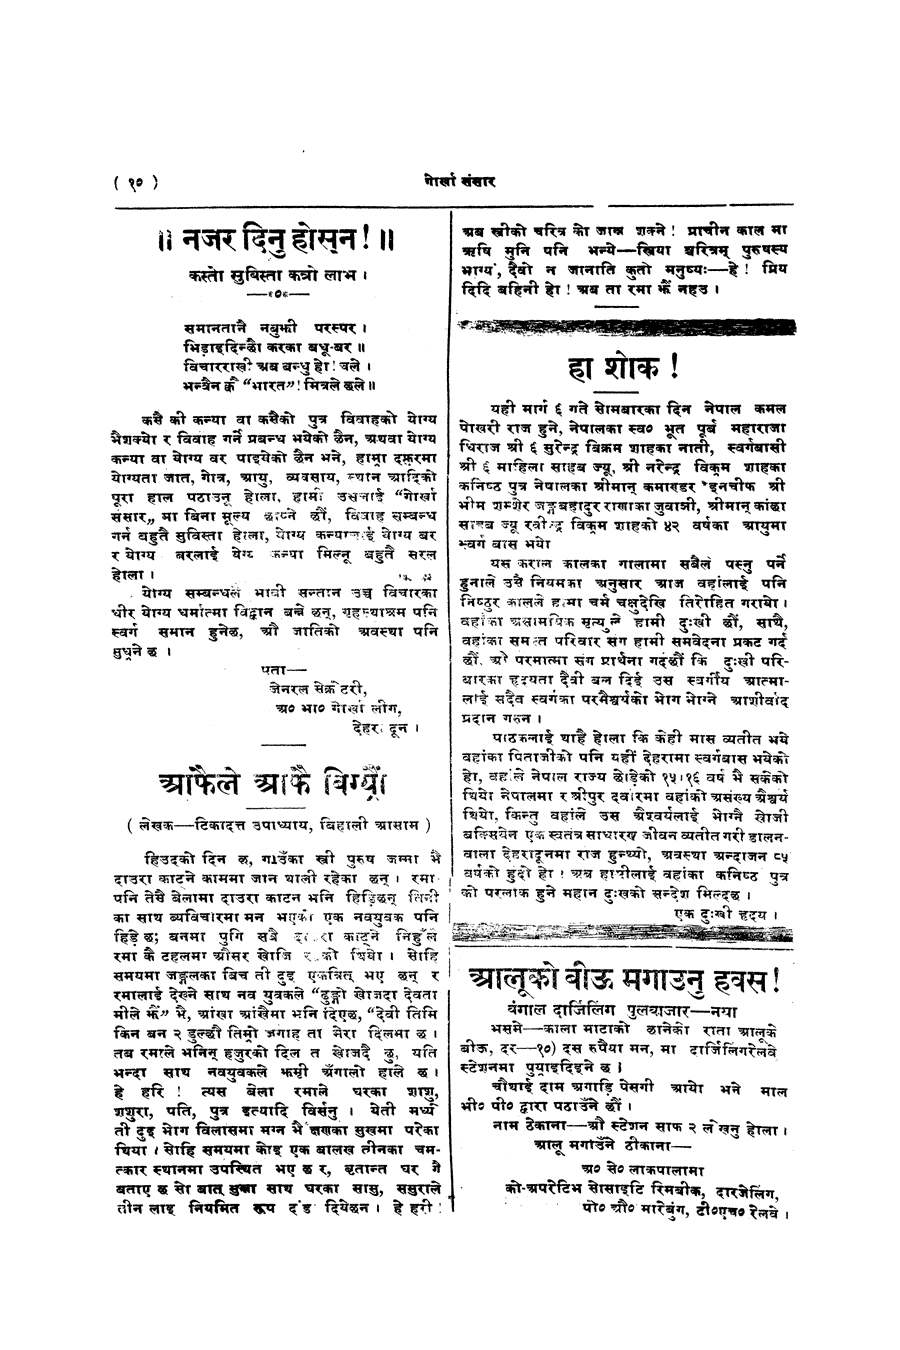 Gorkha Sansar, 3 Jan 1928, page 10